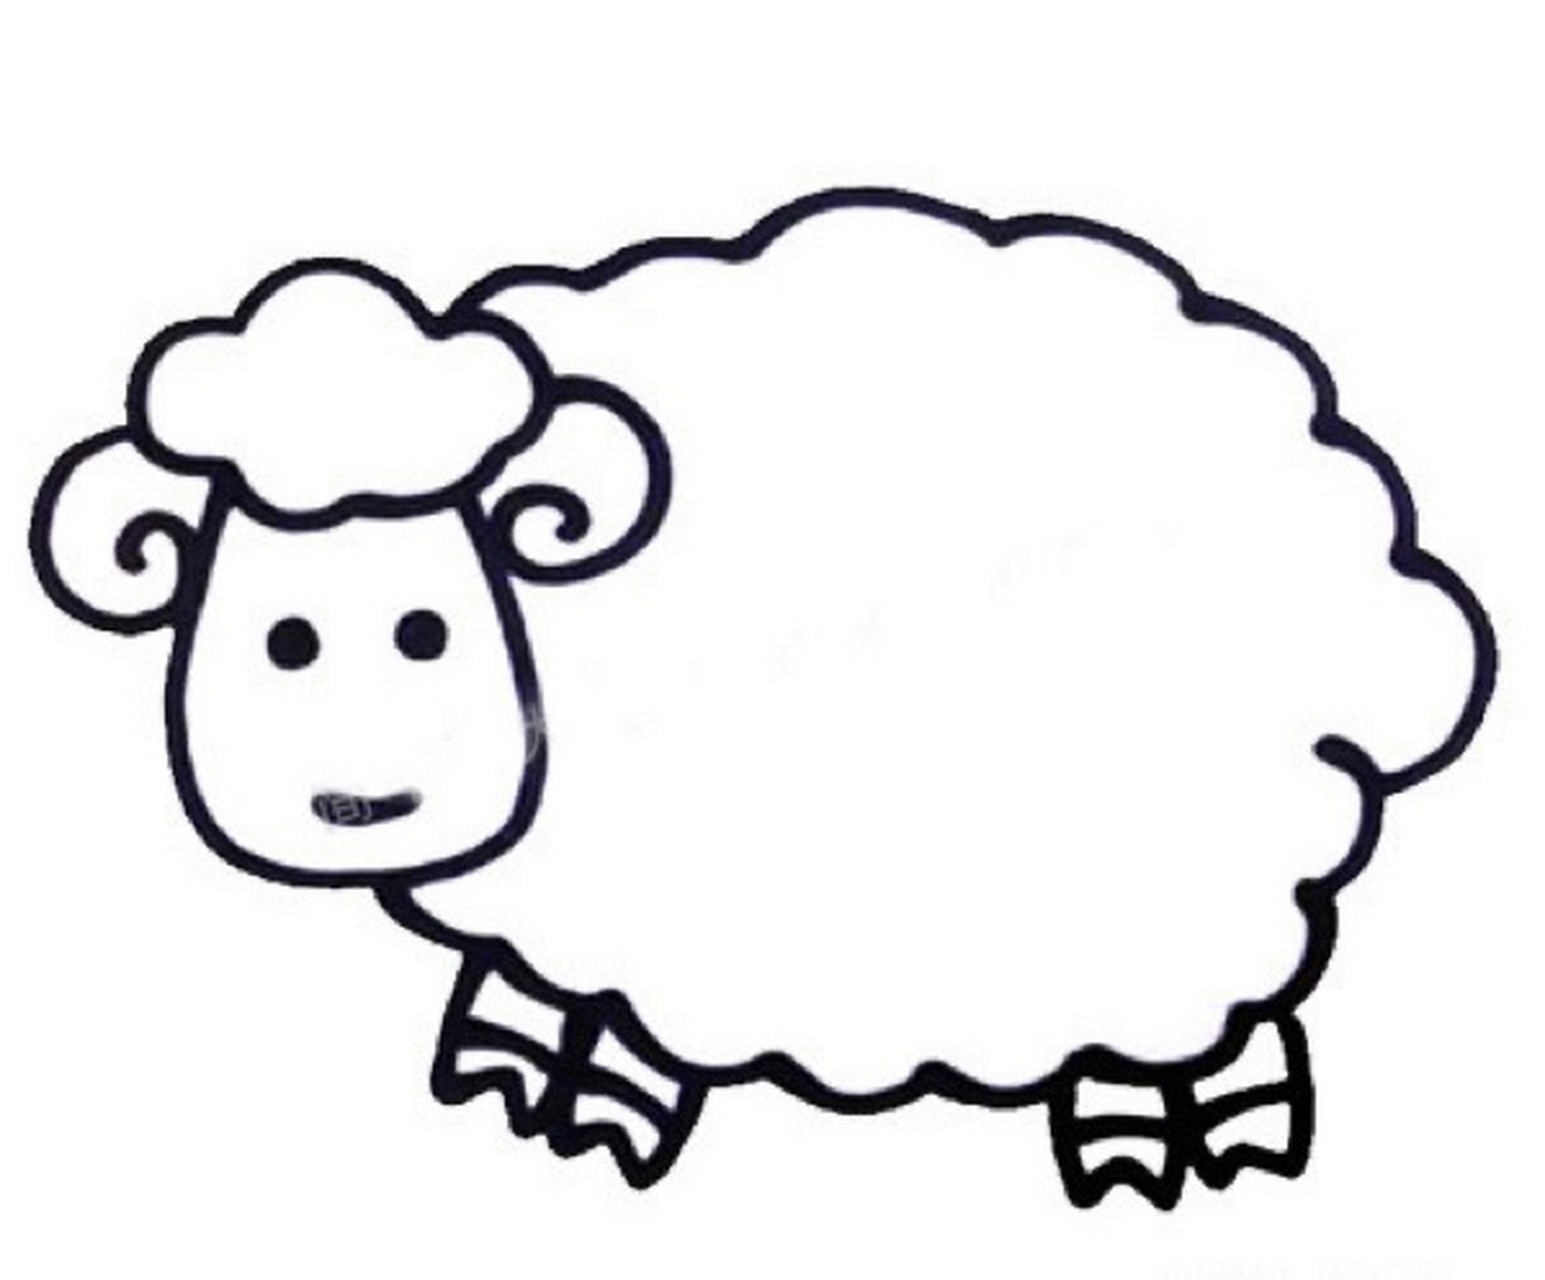 羊简笔画/儿童创意画/简笔画素材 可爱的小绵羊来啦